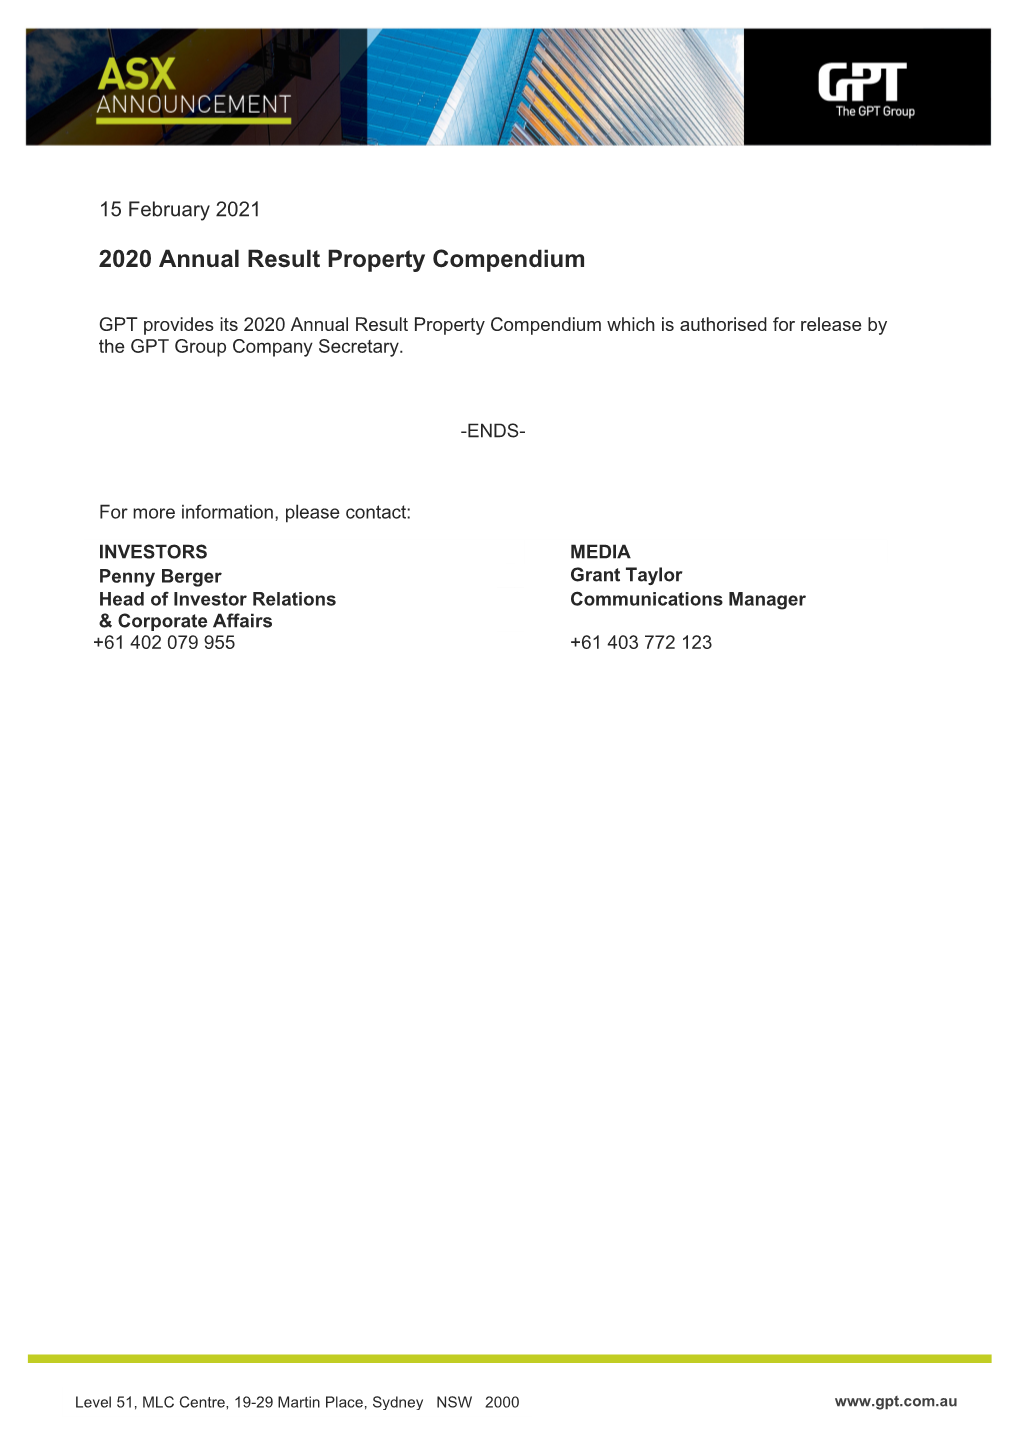 2020 Annual Result Property Compendium